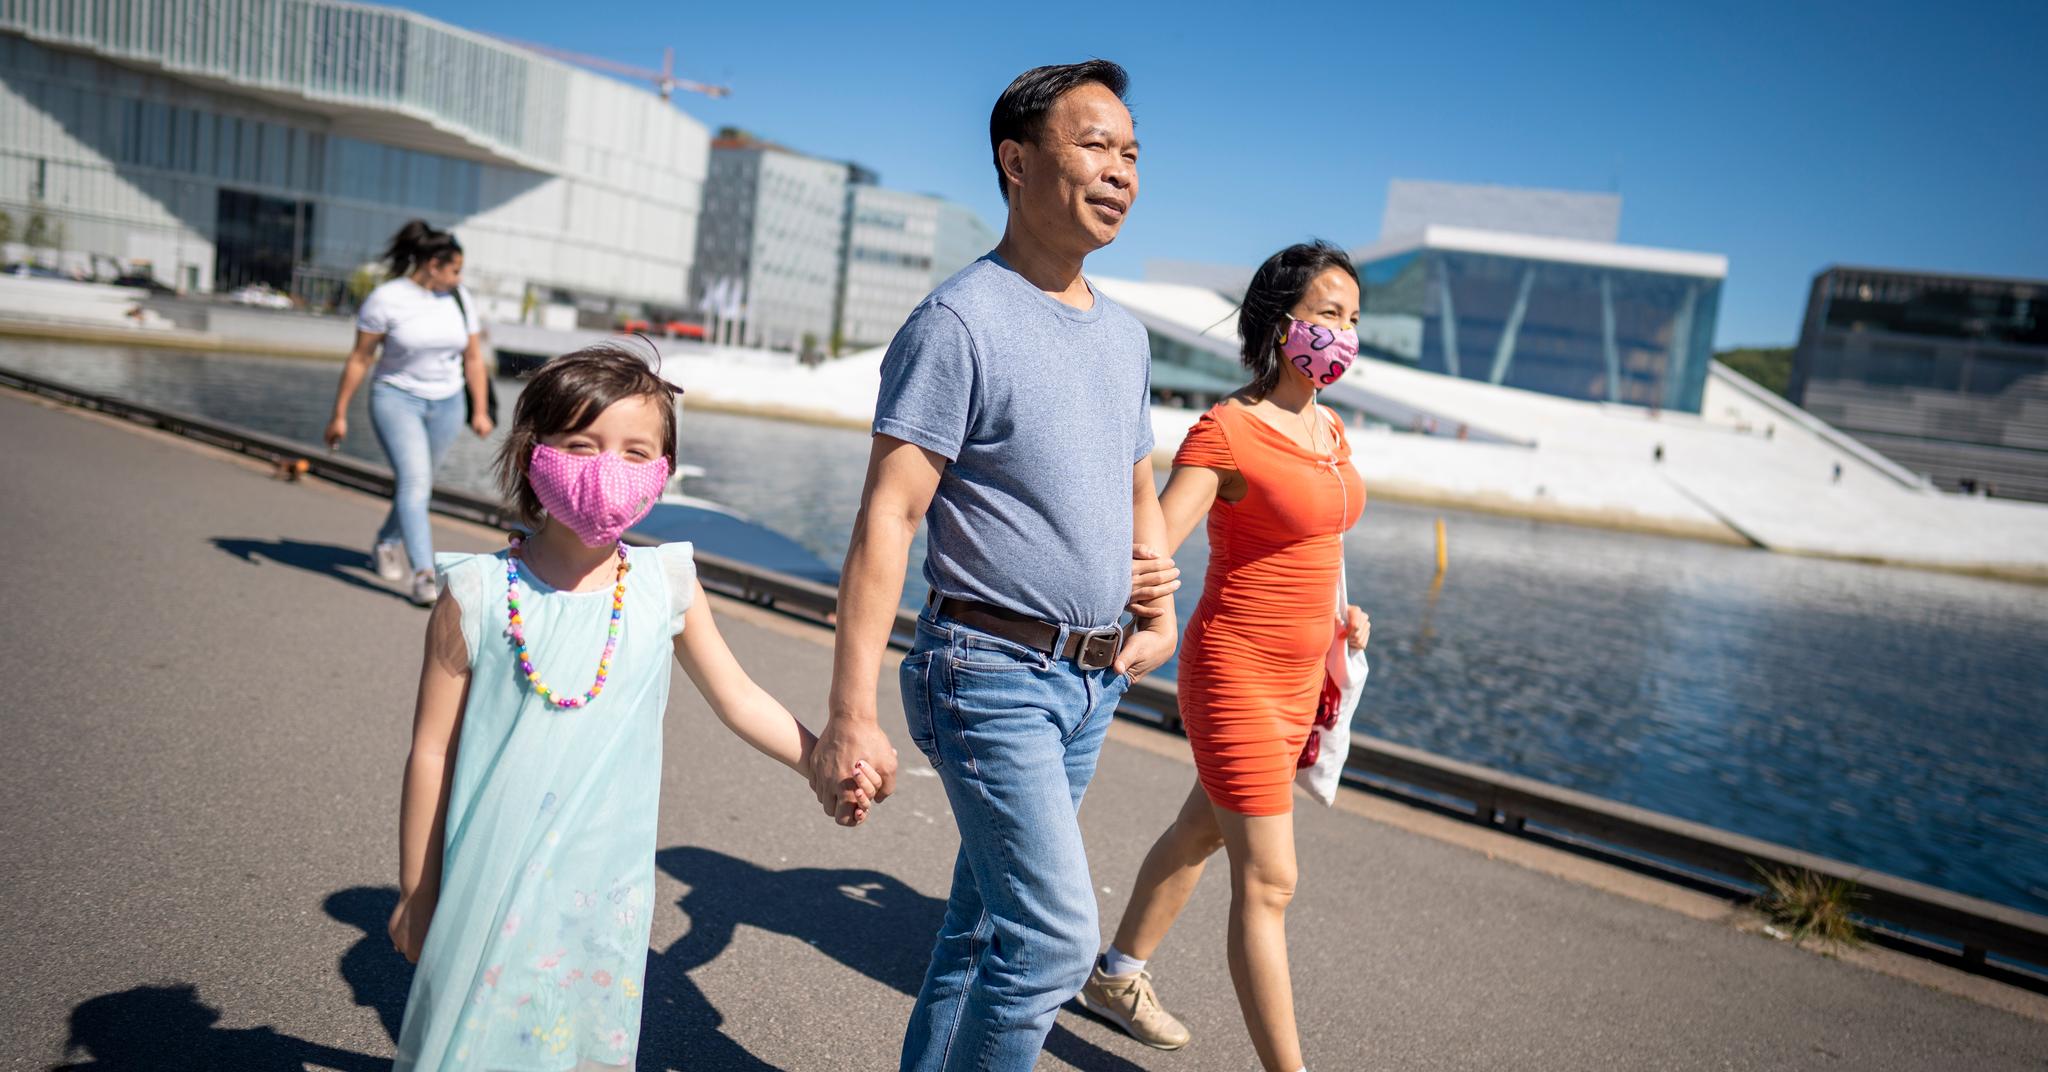 De finnes, men det er få som bruker munnbind i Norge. Khoa Van Nguyen hadde ikke på seg munnbind, men kjæresten Nina og datteren Sunny hadde hvert sitt rosa munnbind da de var på spasertur langs Havnepromenaden i Oslo i mai.